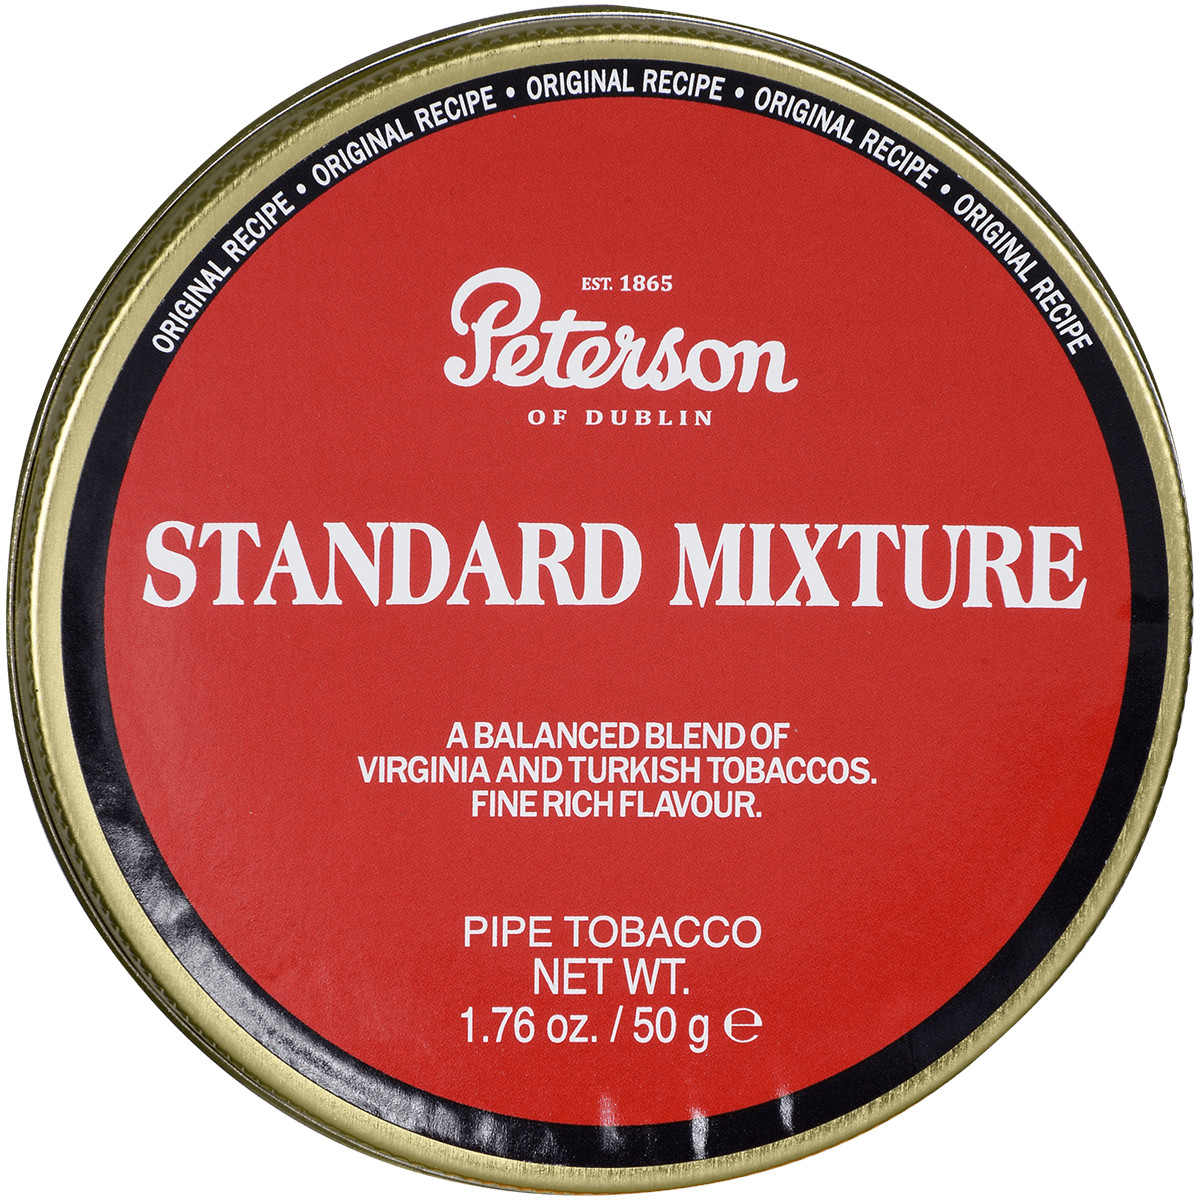 Peterson of Dublin Standard Mixture 50 gram tin